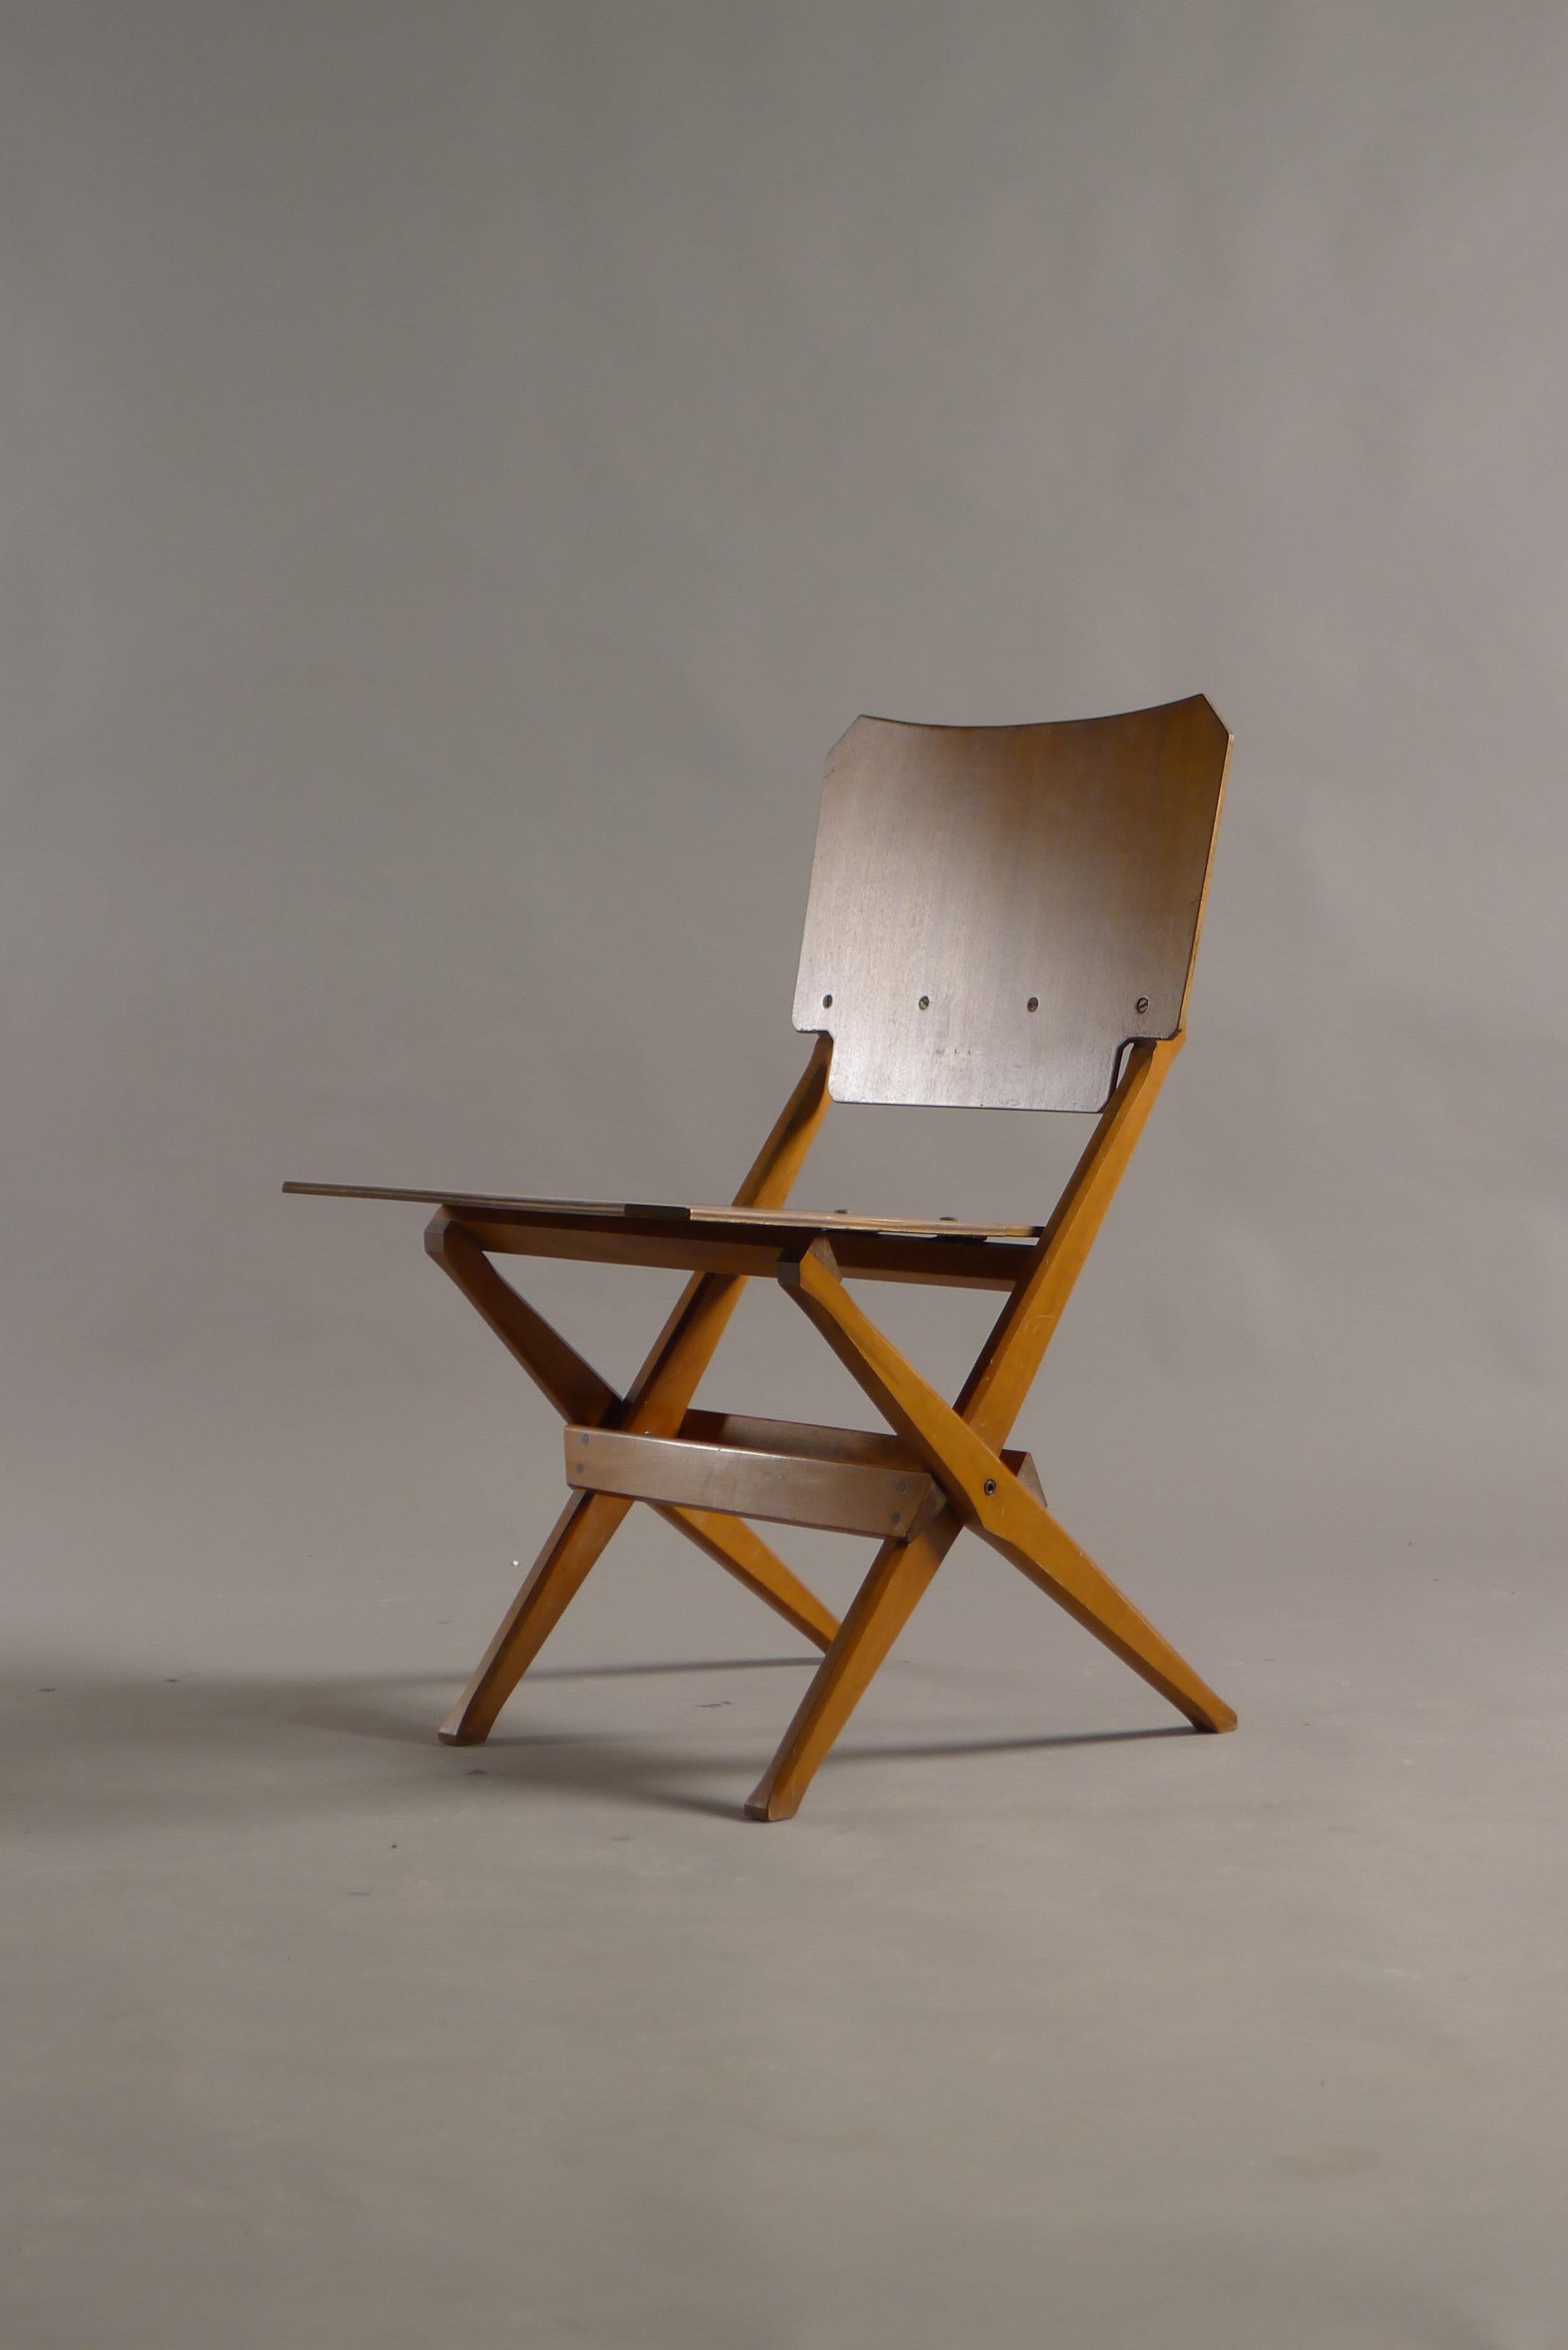 Franco Albini für Poggi, Italien, um 1950. Ein klappbarer Stuhl aus Holz mit Holzkonstruktion in völlig originalem, unberührtem Vintage-Zustand. 

Der Mechanismus funktioniert perfekt. 

Ein selten zu sehender Stuhl von herausragendem Design.